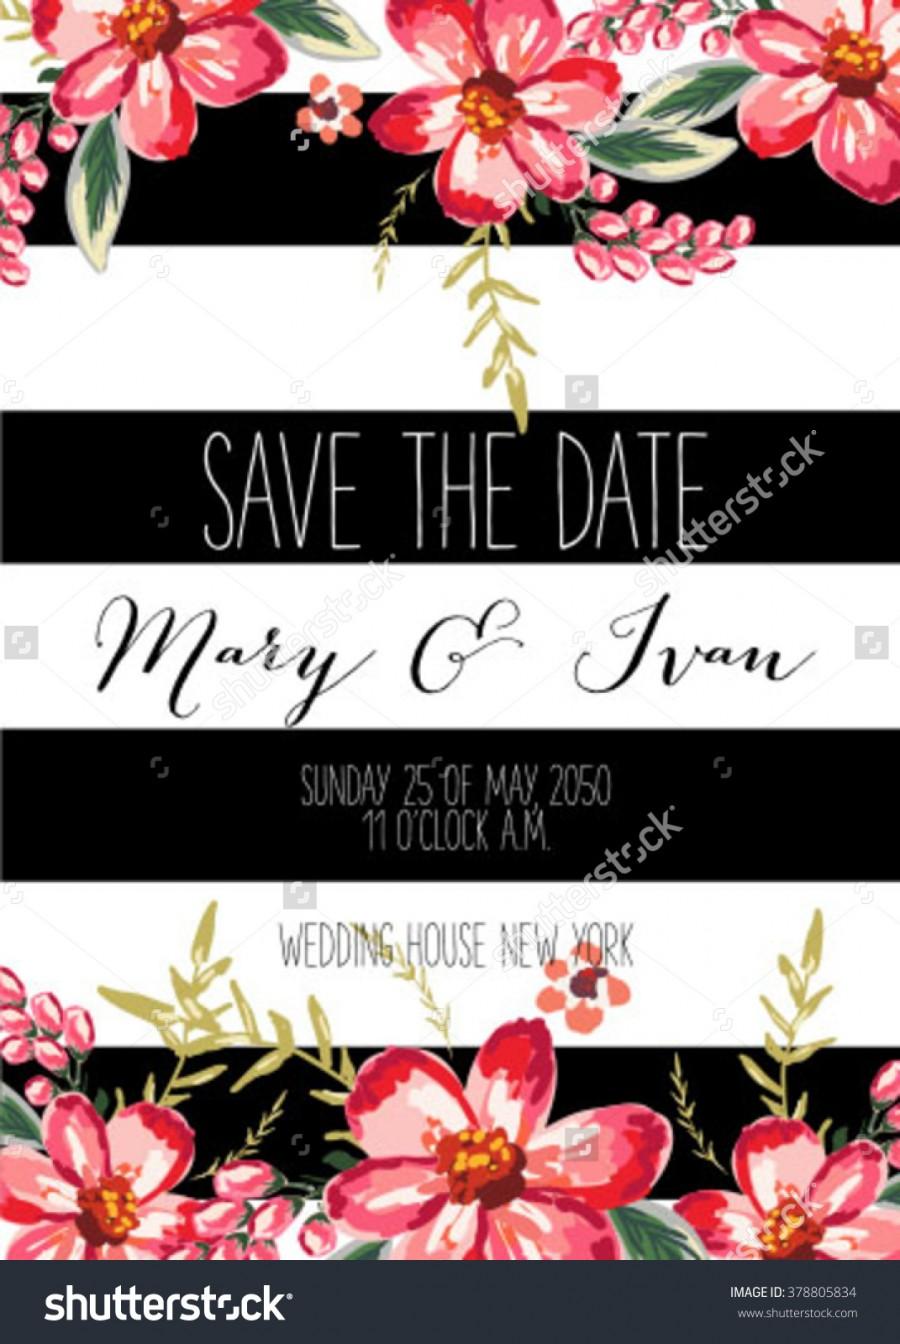 زفاف - Save the date design. Wedding invitation with flowers.